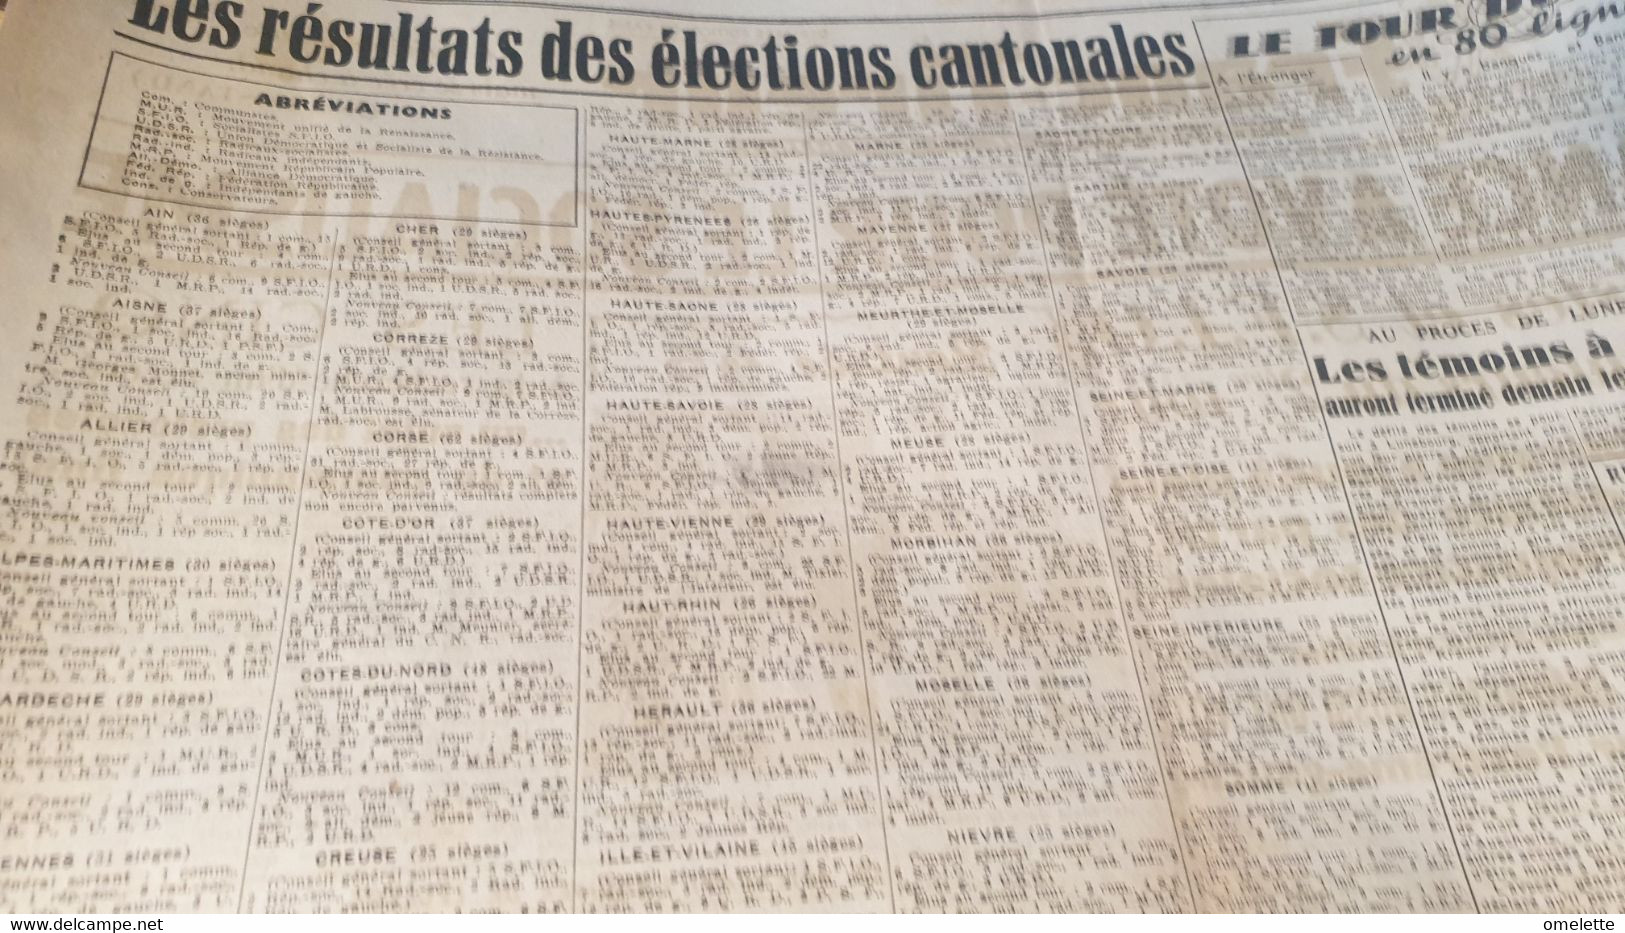 FRANC TIREUR 45/FRANCE VOTE SOCIALISME /INDOCHINE /TOULOUSE 12 P.P.F CONDAMNES/RESULTATS CANTONALES - Informations Générales